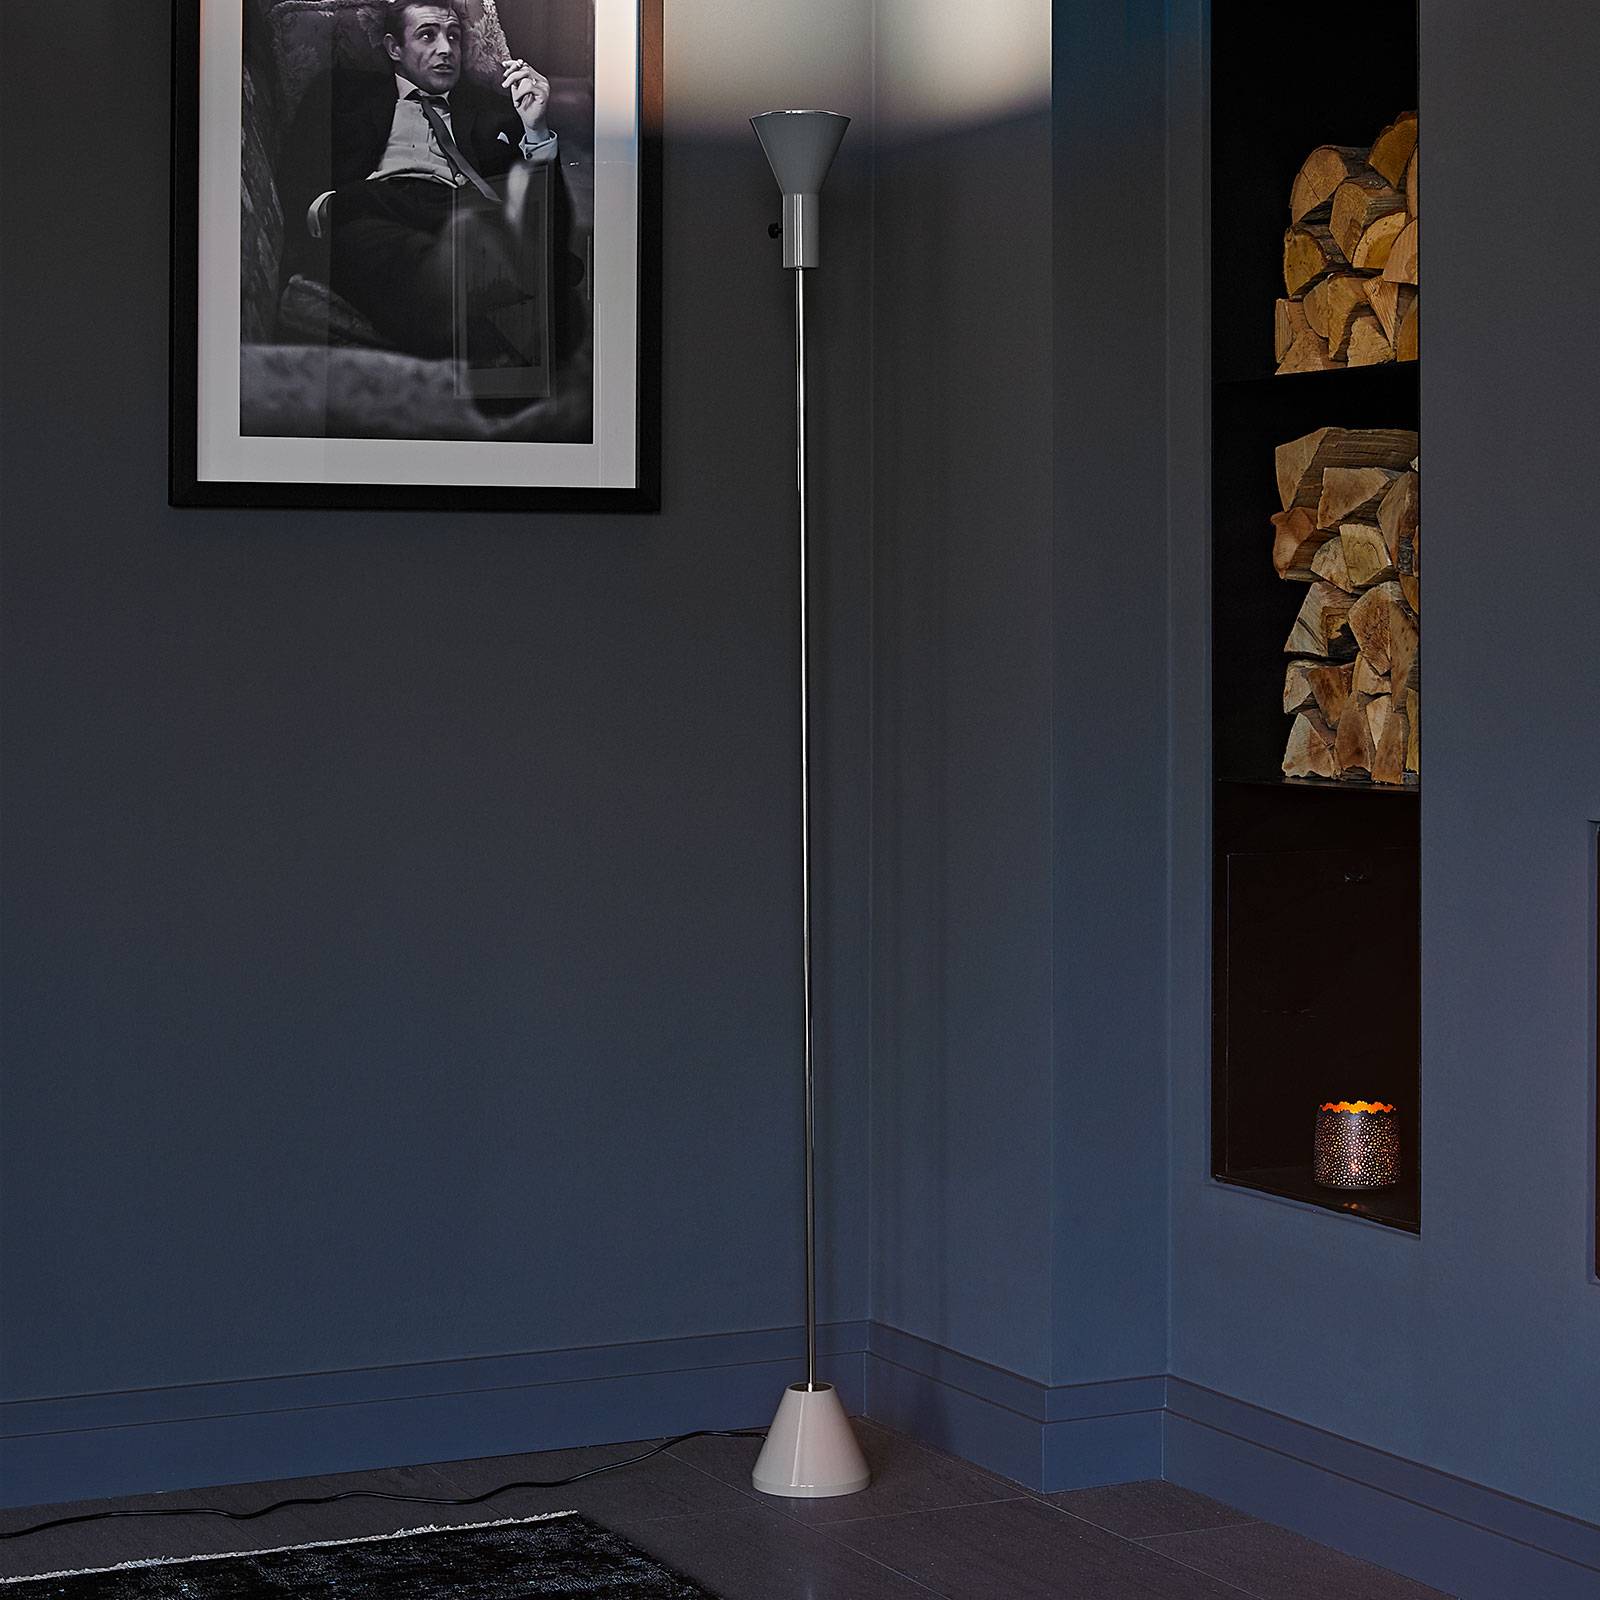 Lampa stojąca LED Gru z wbudowanym ściemniaczem